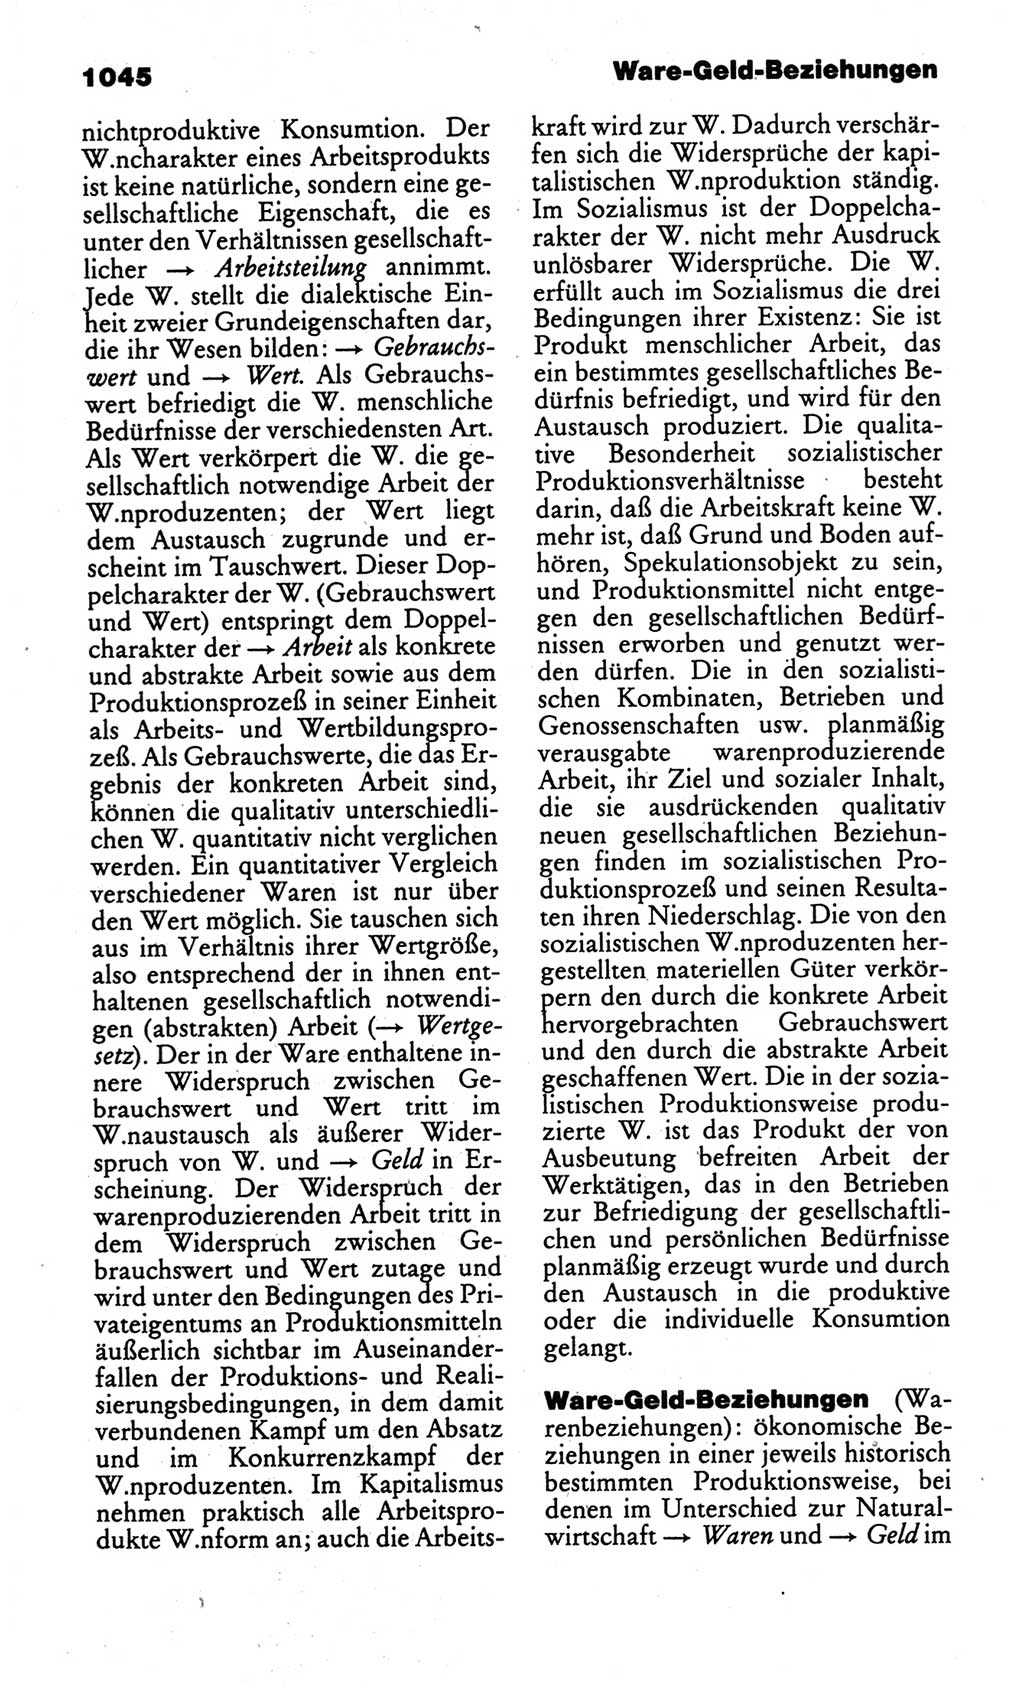 Kleines politisches Wörterbuch [Deutsche Demokratische Republik (DDR)] 1986, Seite 1045 (Kl. pol. Wb. DDR 1986, S. 1045)